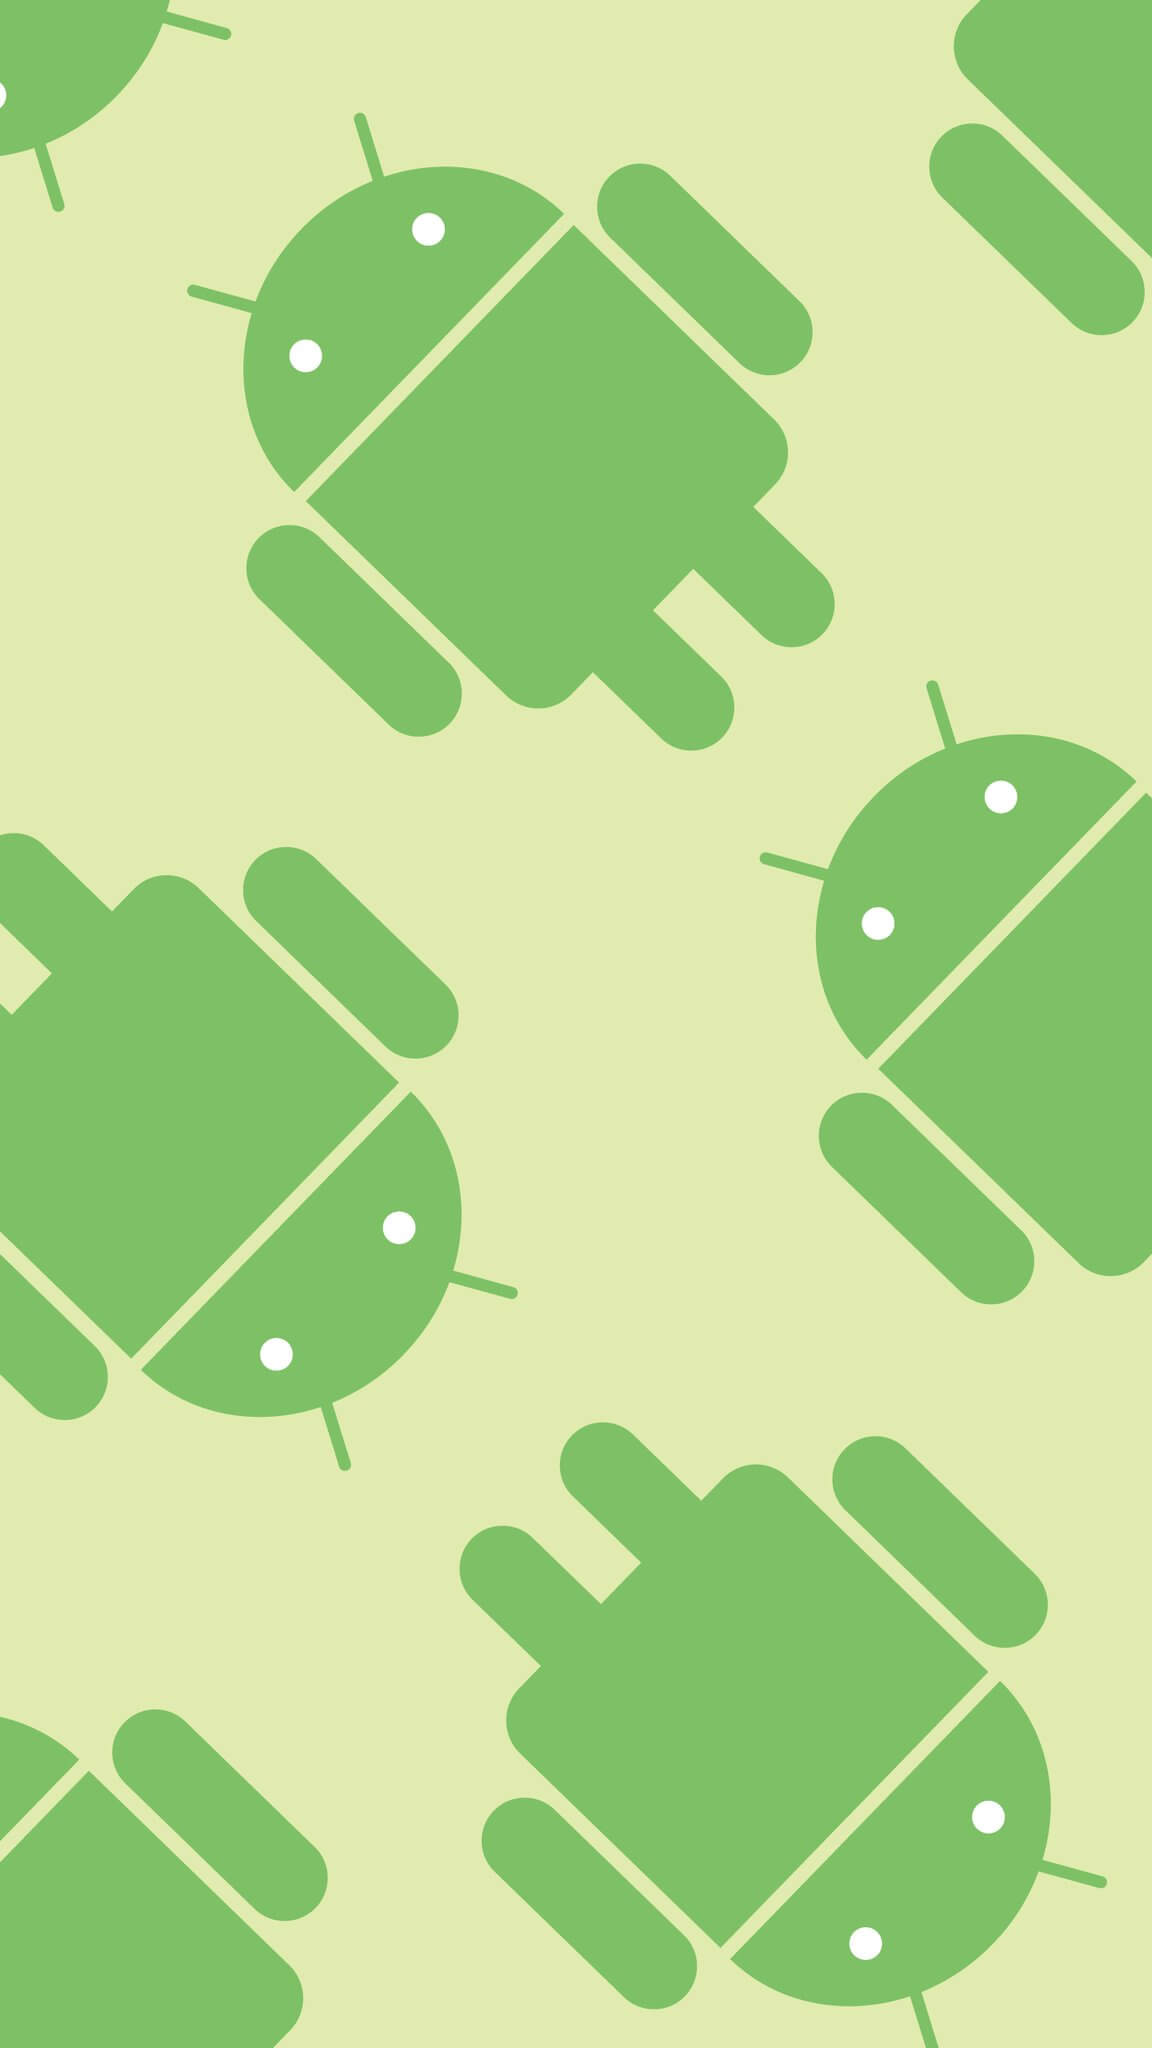 Android公式のドロイド君や7 0 Nougatの壁紙をダウンロードする方法 Iphoneにも設定可 使い方 方法まとめサイト Usedoor